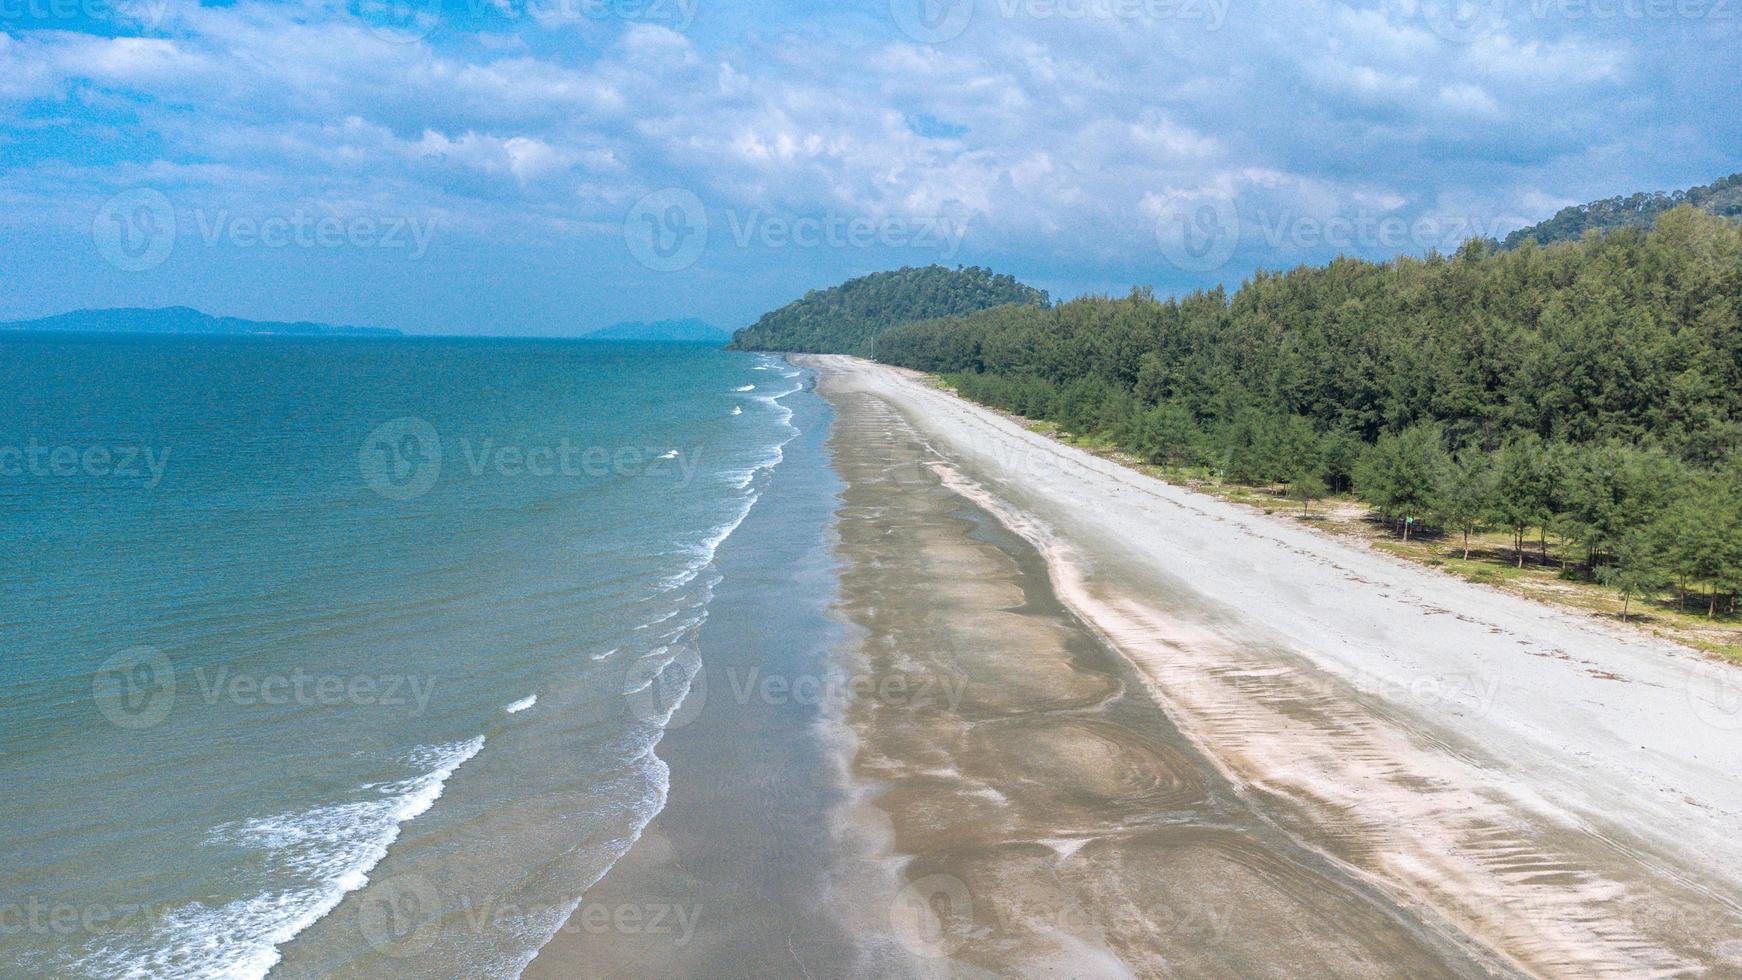 bella spiaggia nera con l'onda del mare al parco nazionale di laem son, ranong, tailandia. la spiaggia del mare e i pini sono a metà della foto panoramica aerea.